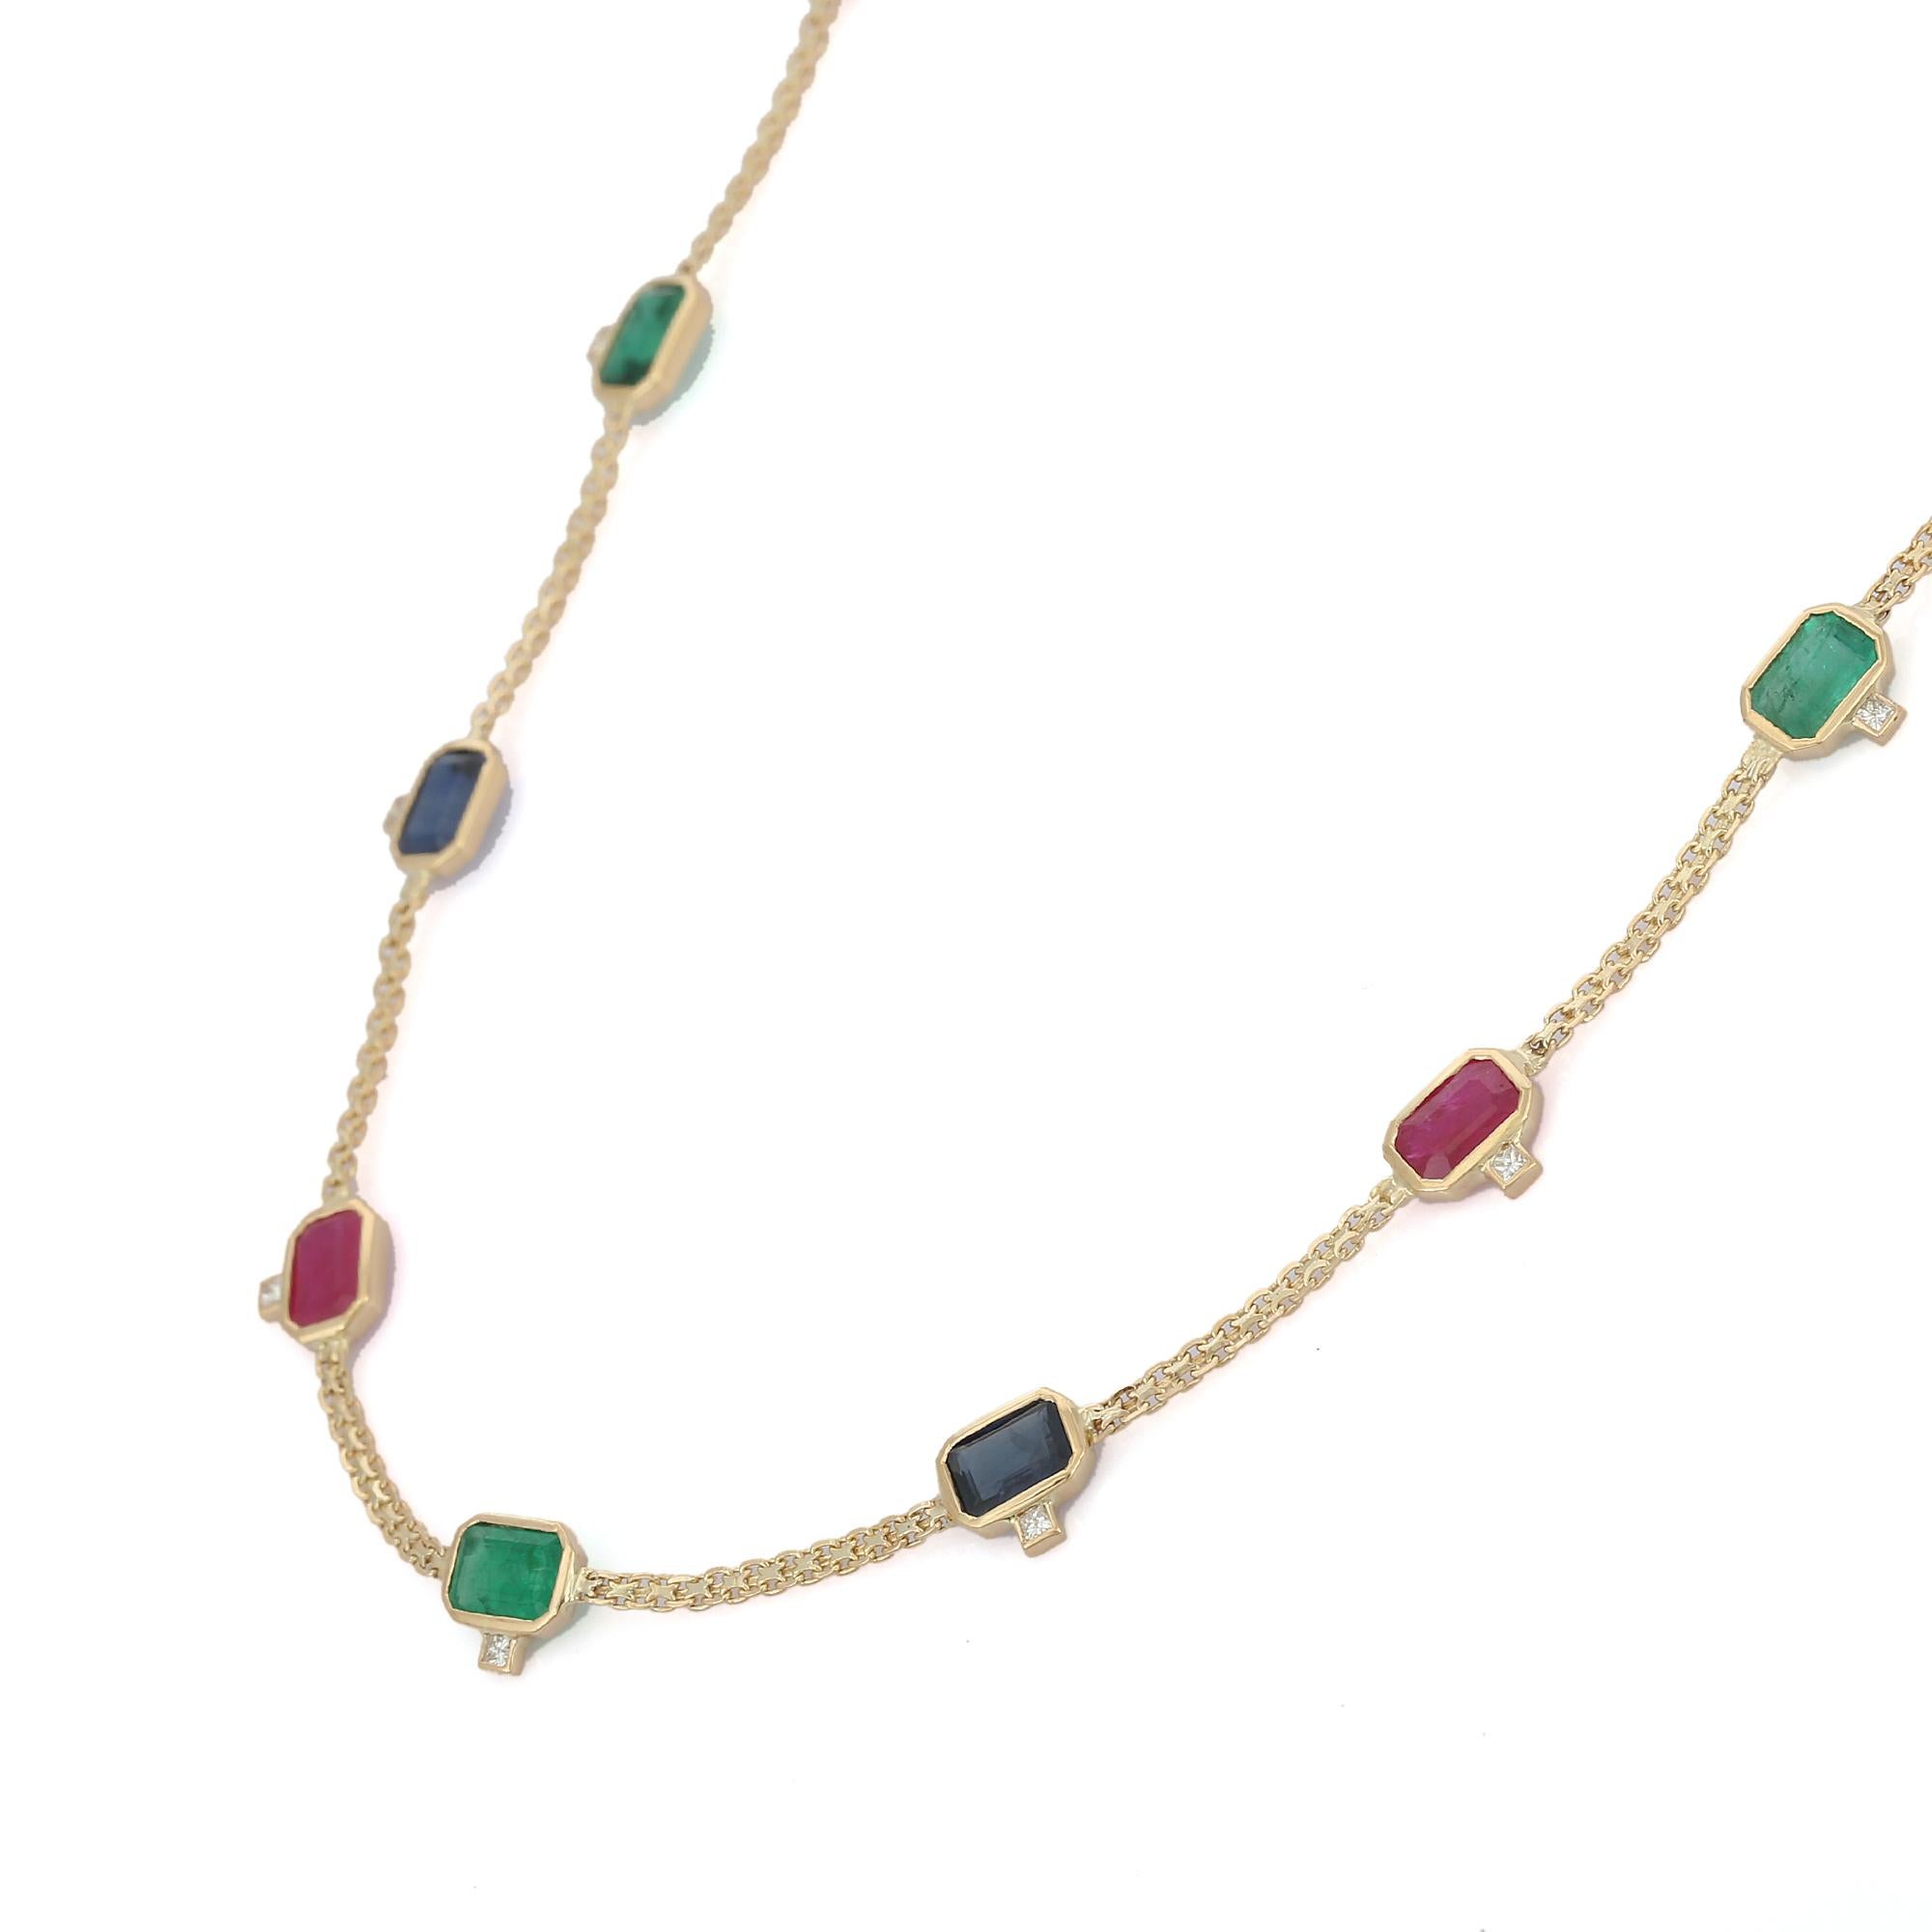 Multi-Edelstein-Halskette aus 18-karätigem Gold, besetzt mit Smaragden, Rubinen, Saphiren und Diamanten im Achteckschliff.
Ergänzen Sie Ihren Look mit dieser eleganten Perlenkette mit mehreren Edelsteinen. Dieses atemberaubende Schmuckstück wertet